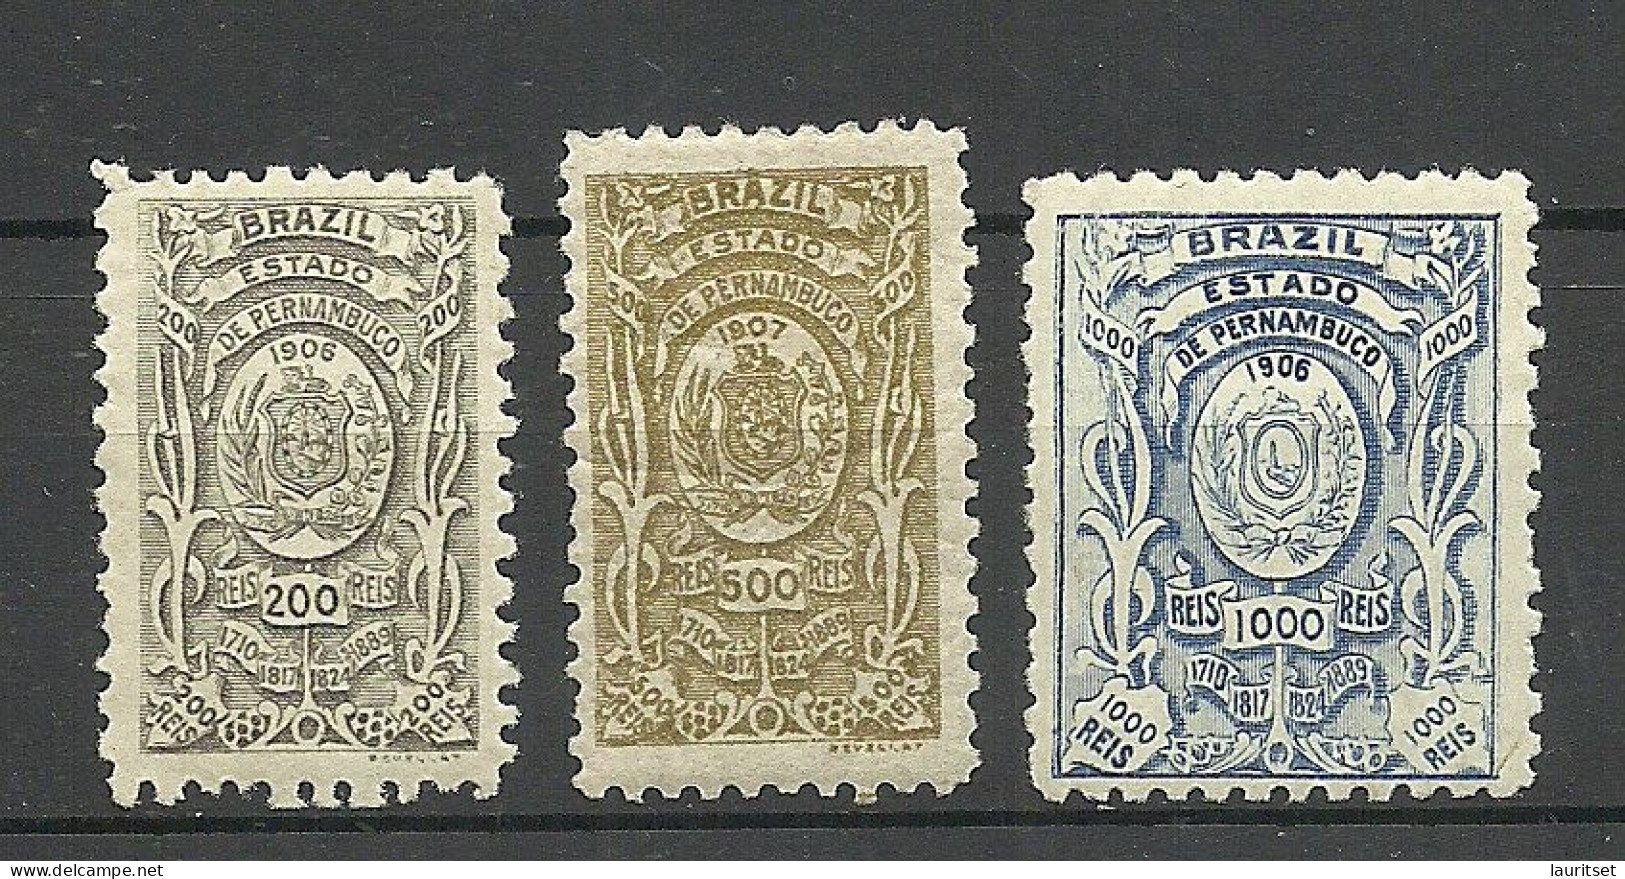 BRAZIL Brazilia Estado De Pernambuco 1898 Local Revenue Taxe Fiscal Tax, 3 Stamps, MNH/MH - Unused Stamps